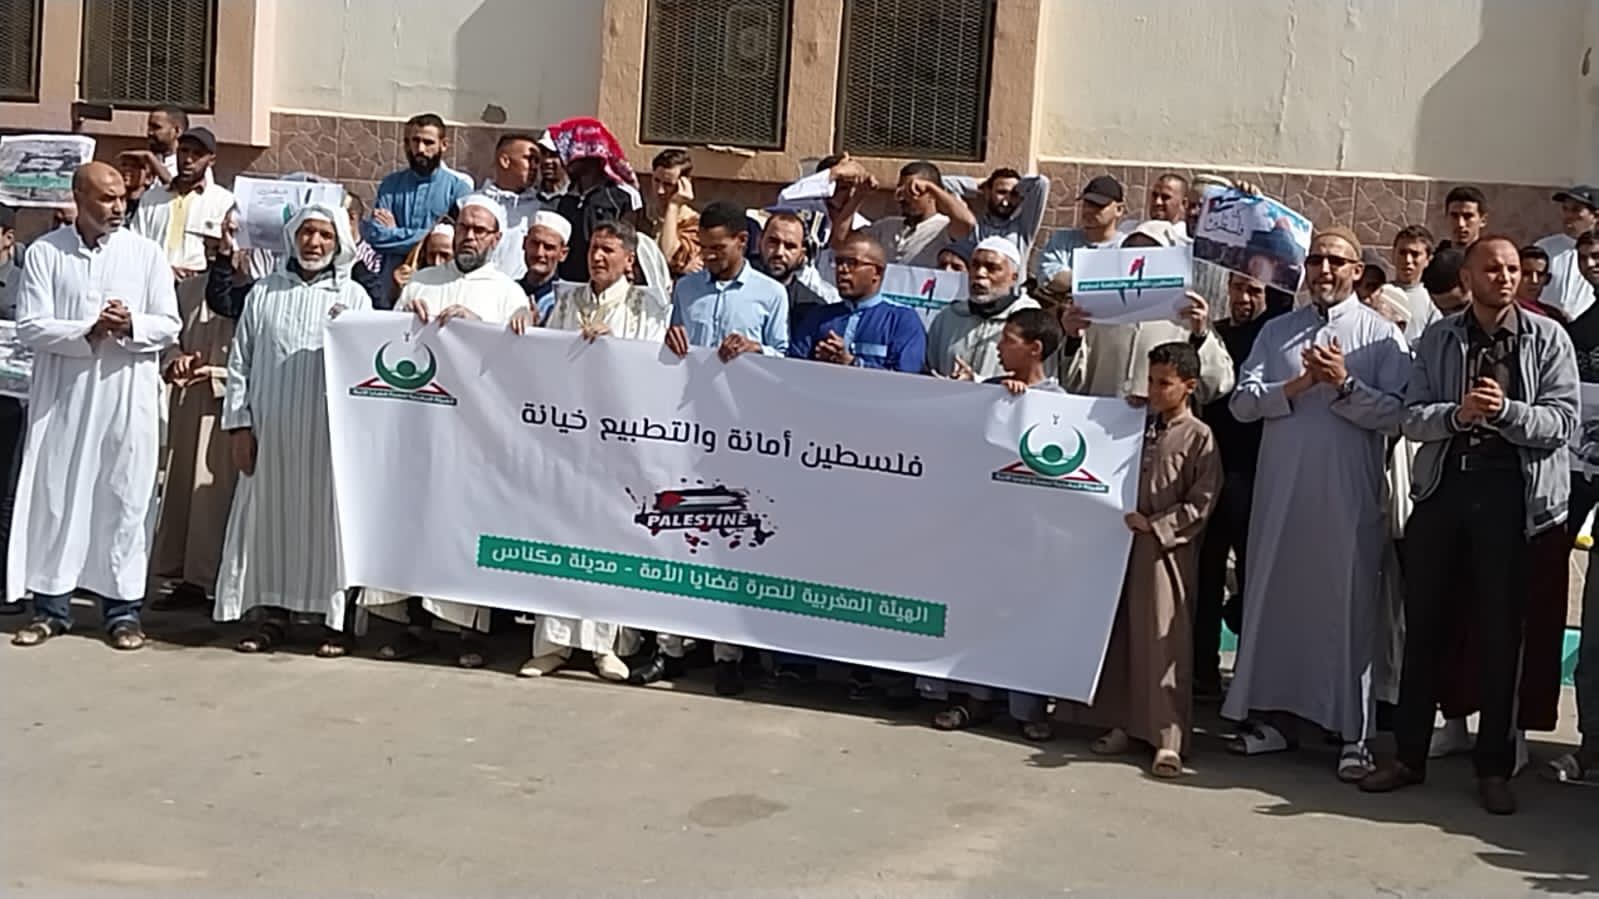 30 تظاهرة بالمغرب نصرة للأقصى في جمعة الغضب